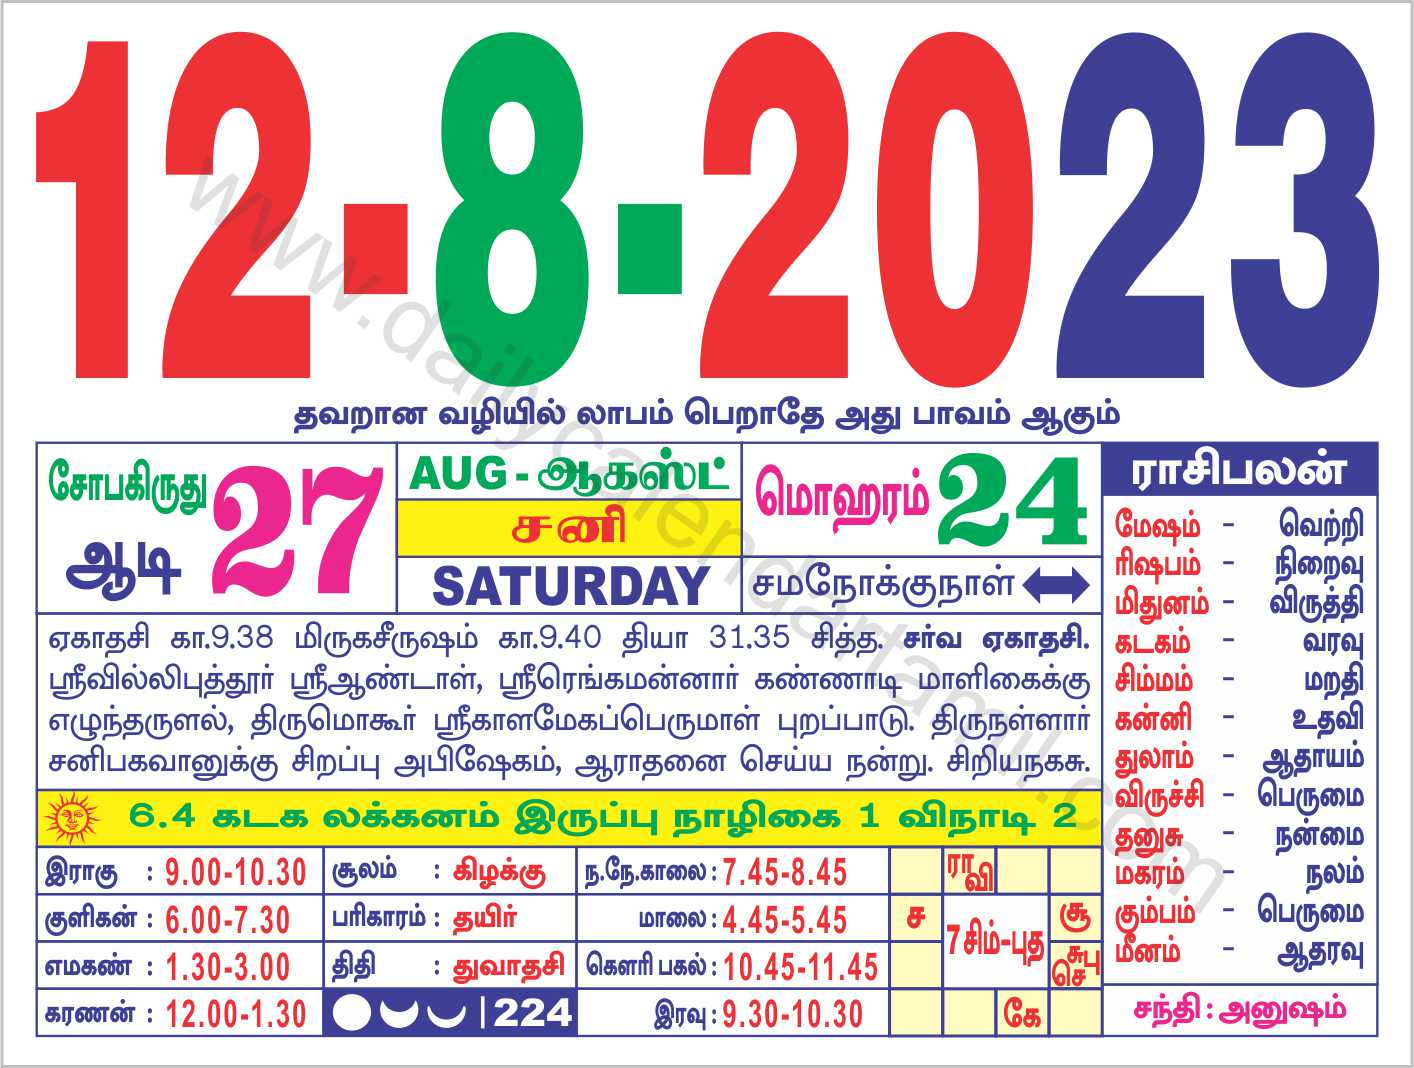 Lala Ramswaroop Calendar 2023 2023 Panchang From January 5 2023 Hindu Calendar JanuaryCalendar